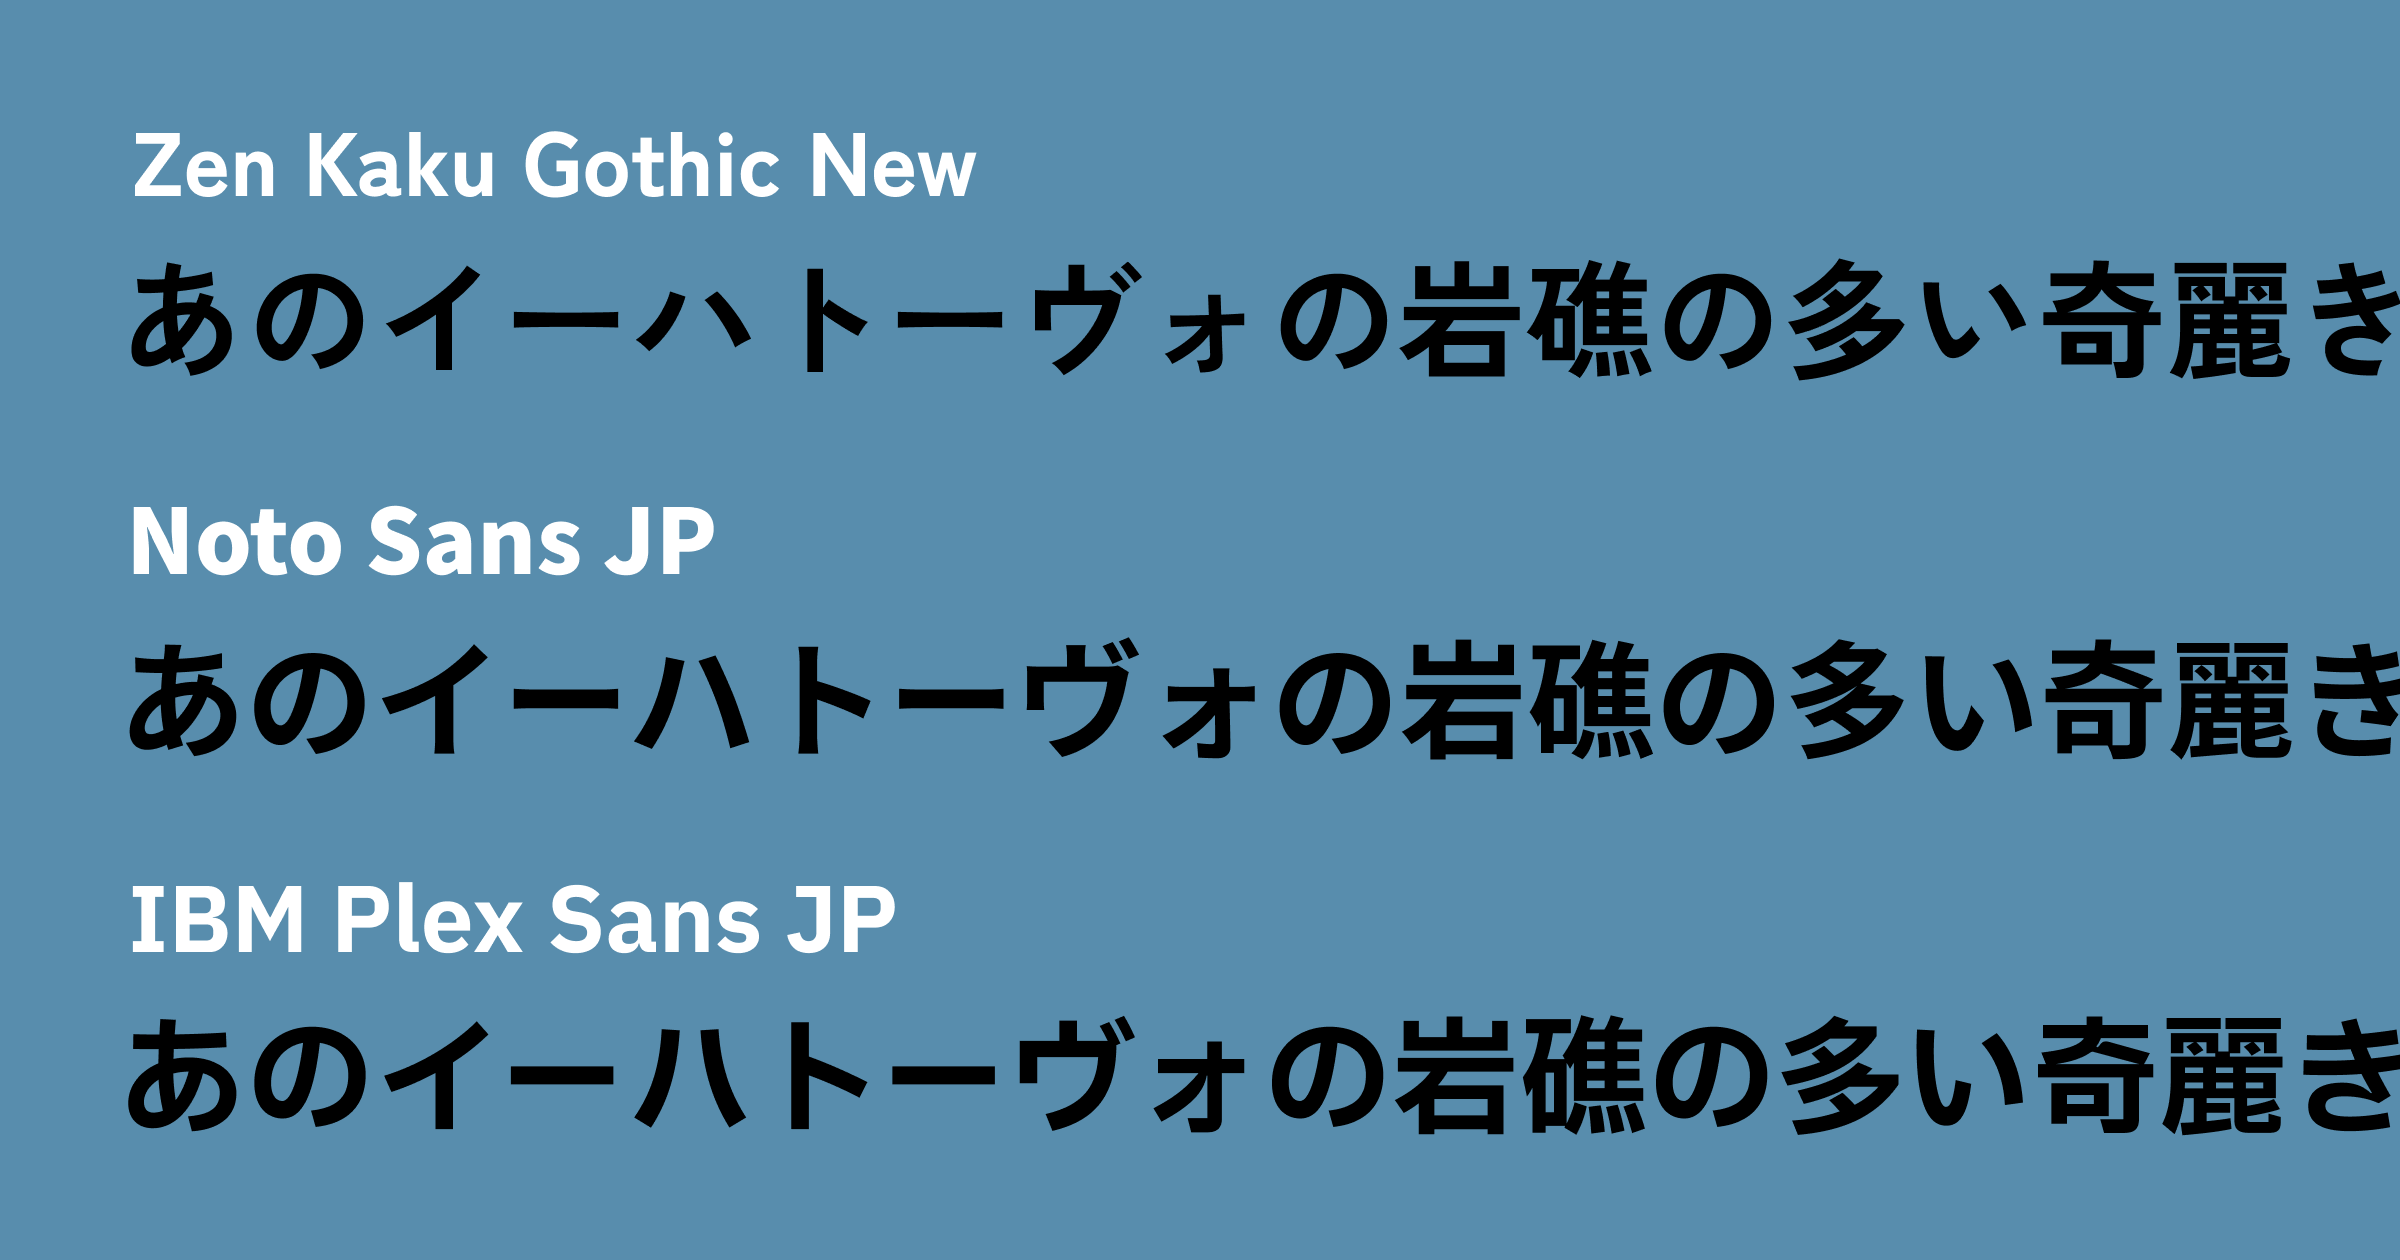 02 Google Fonts で提供されている日本語フォント